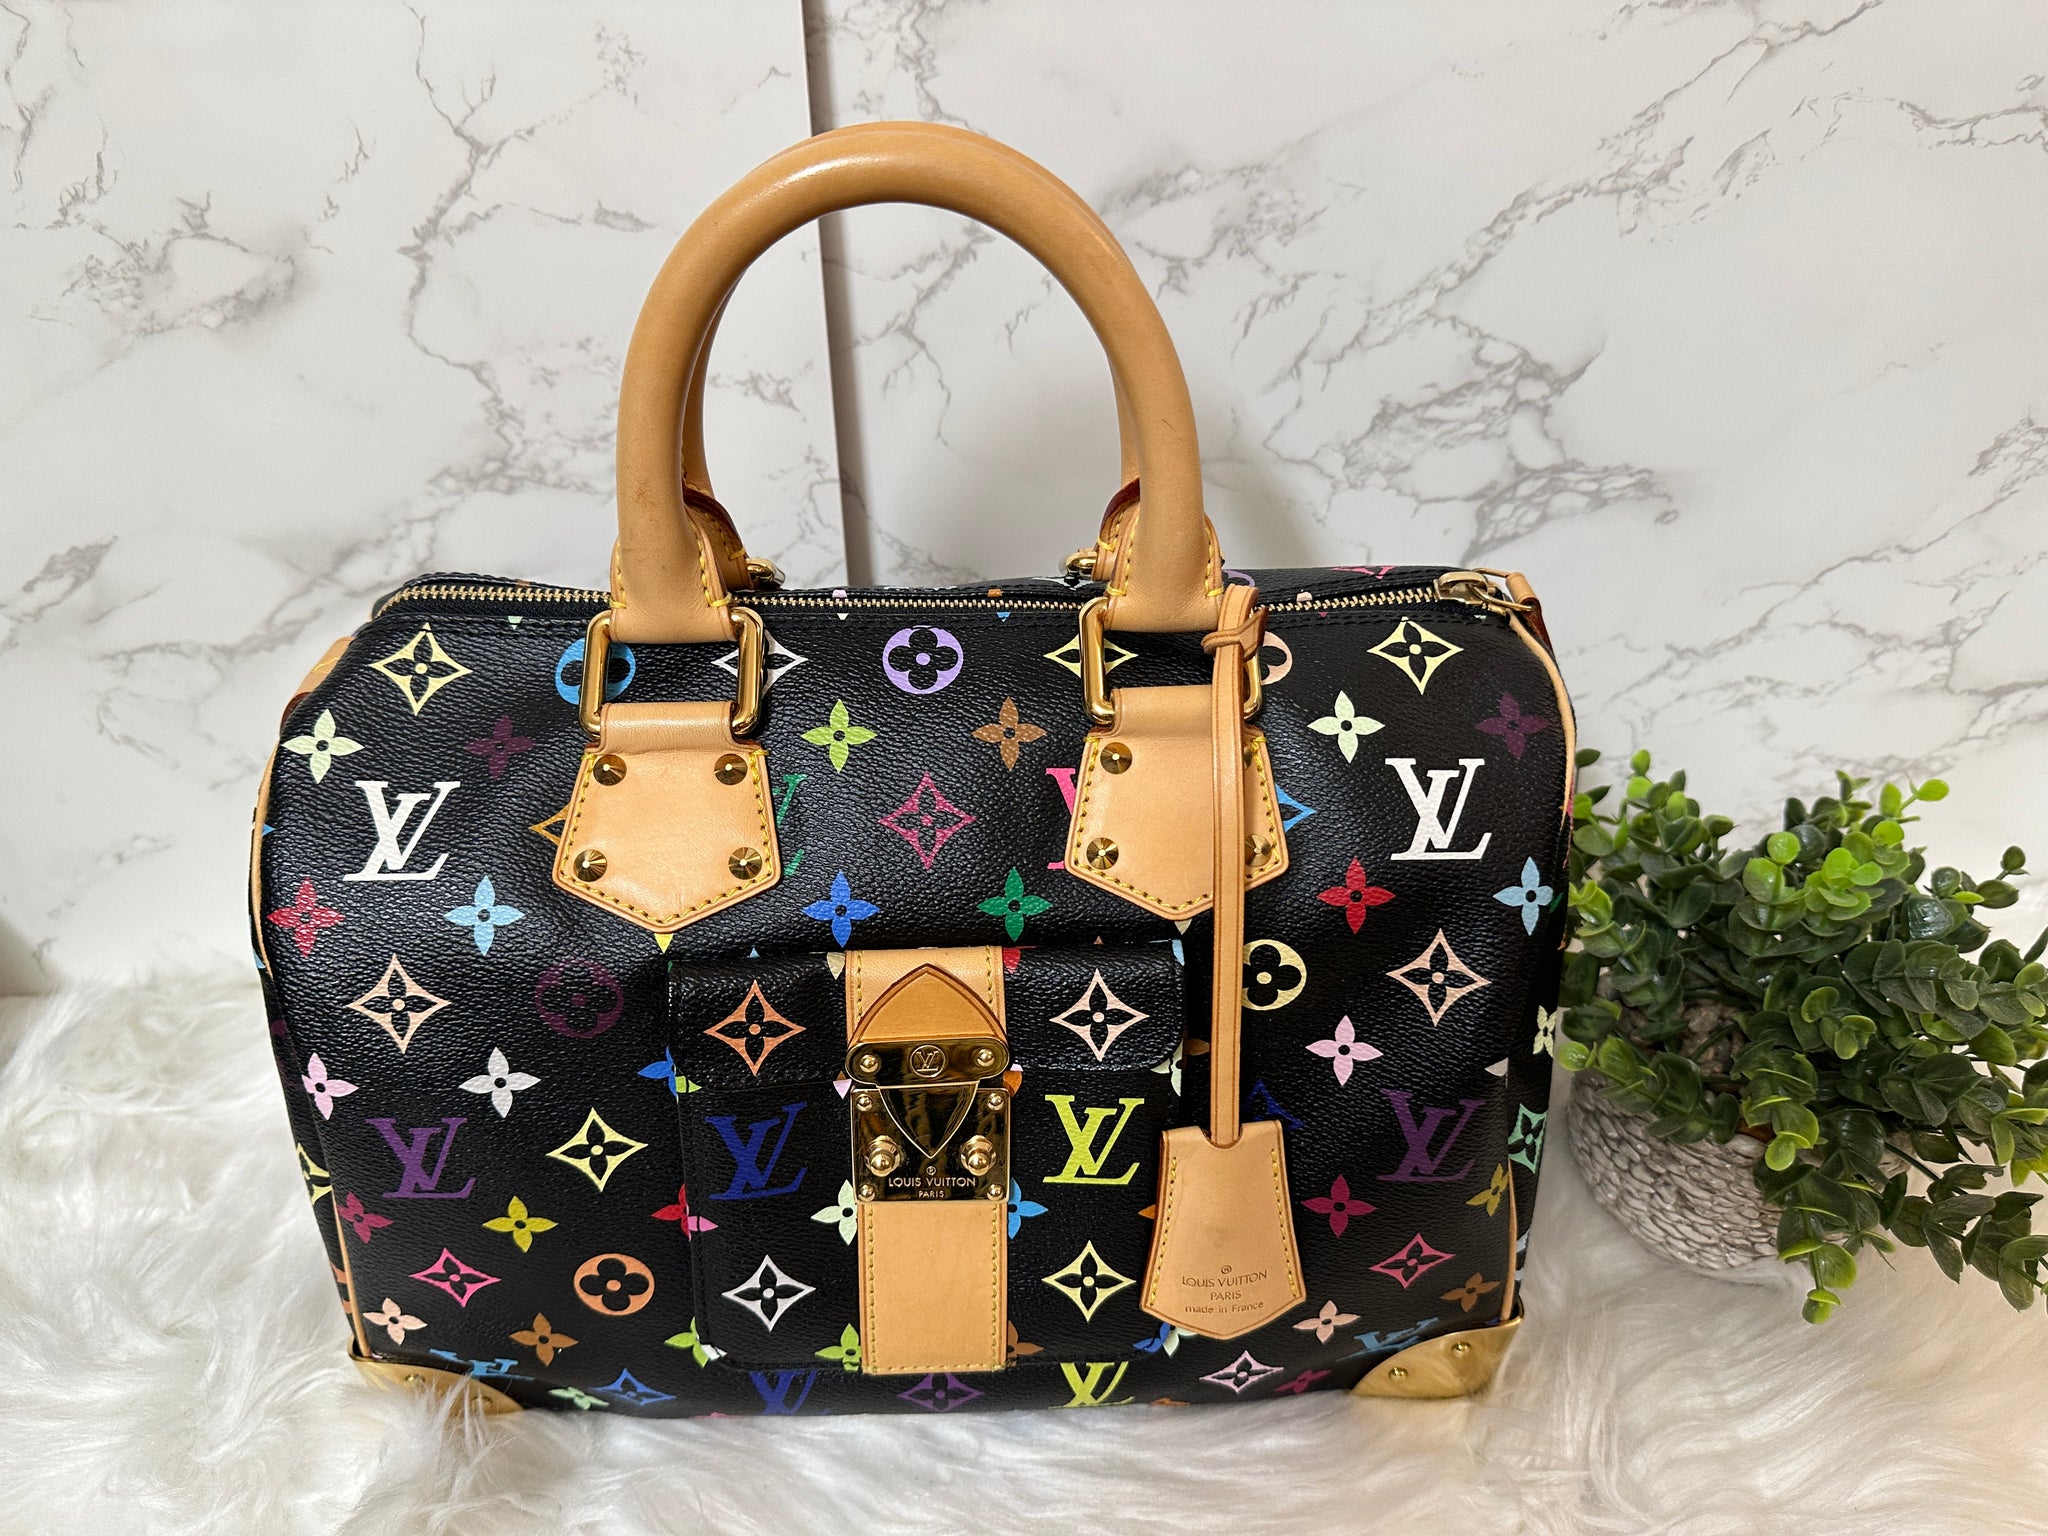 Vuitton Discontinues Multicoloured Monogram